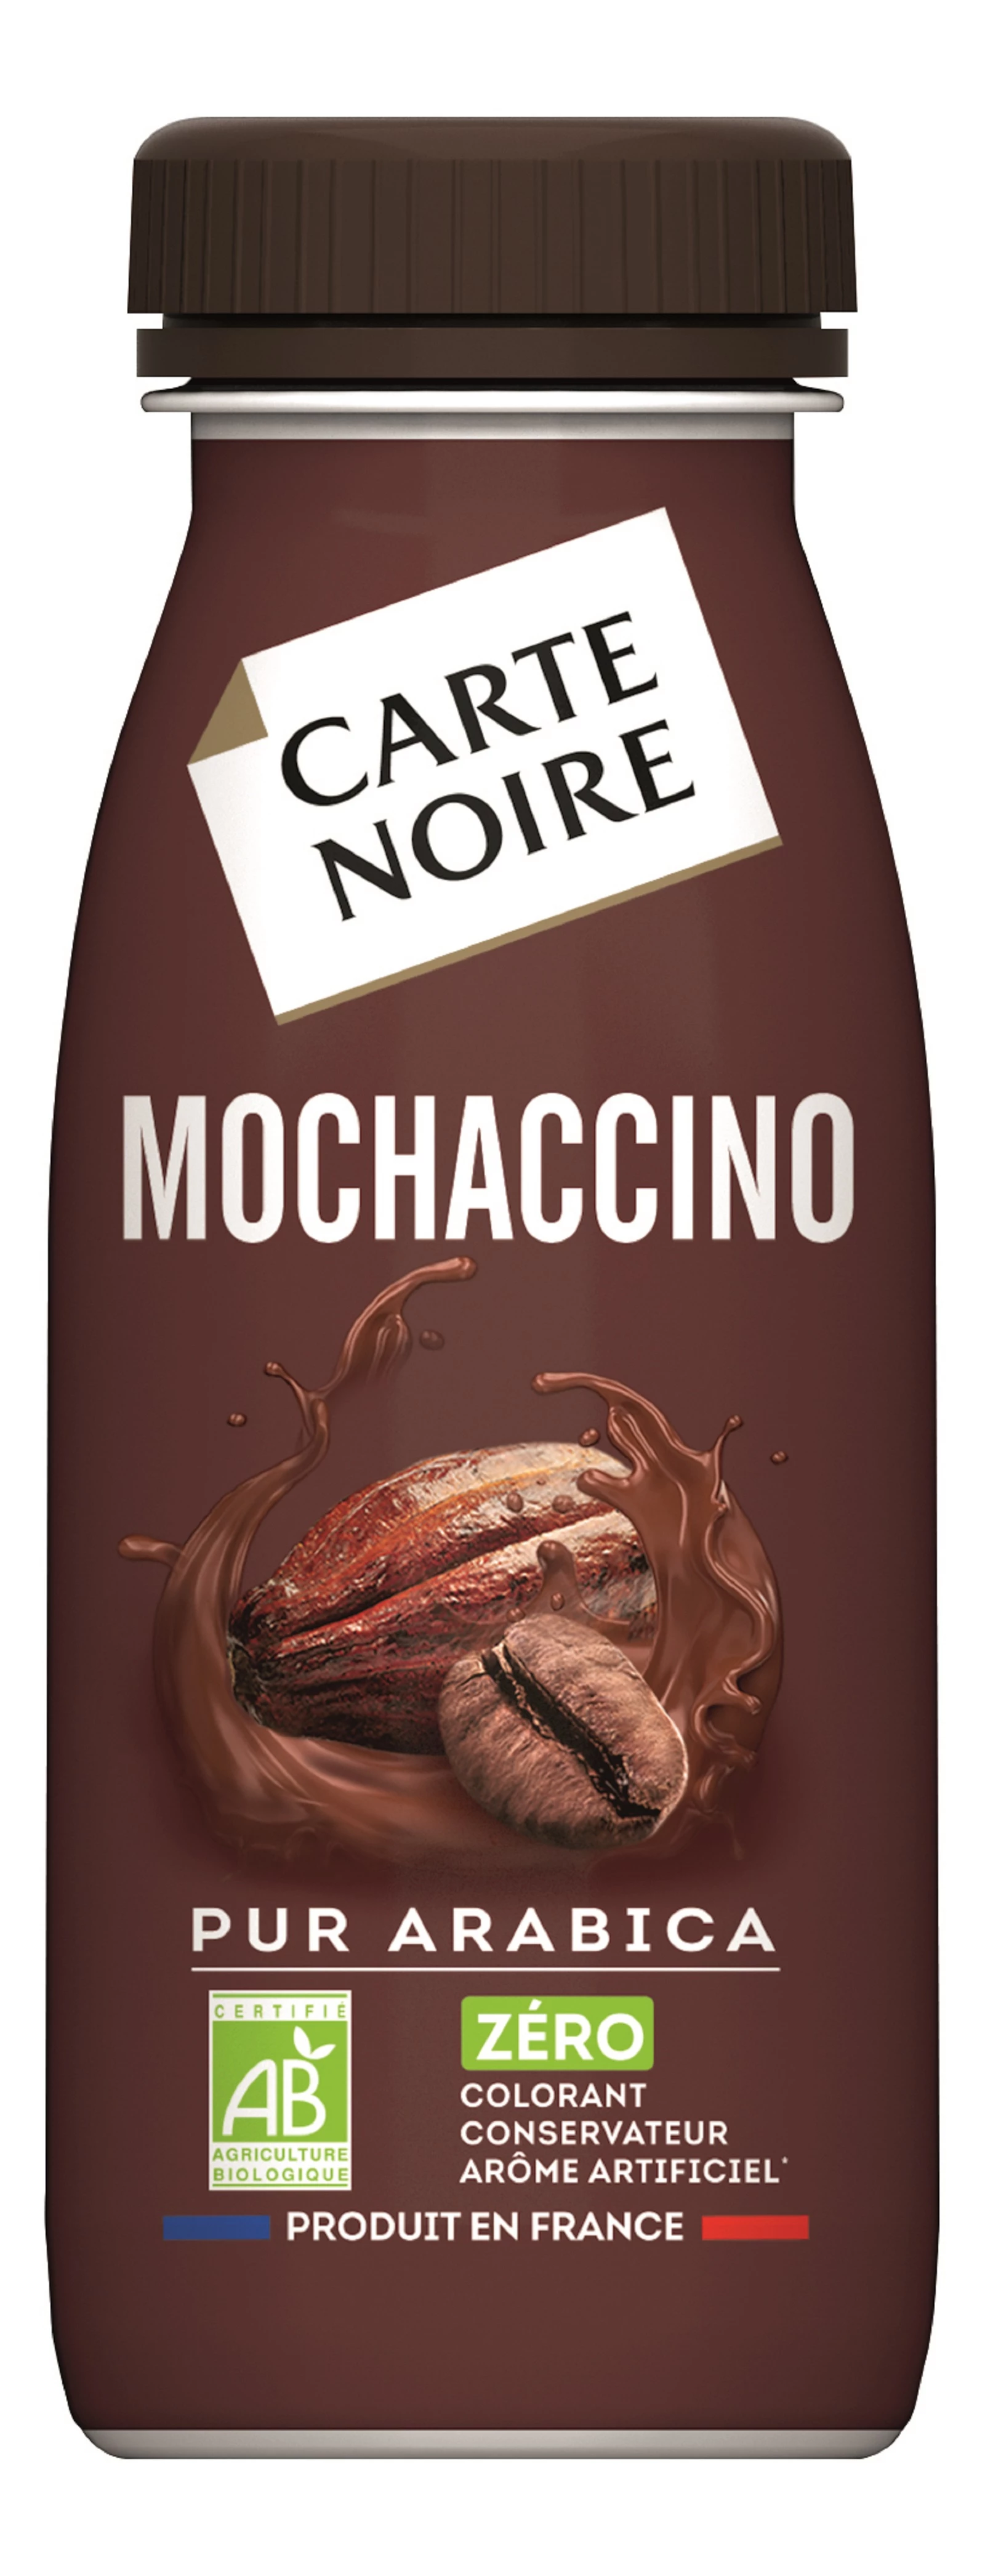 Biologische Mochaccino koffiedrank 25cl - CARTE NOIRE